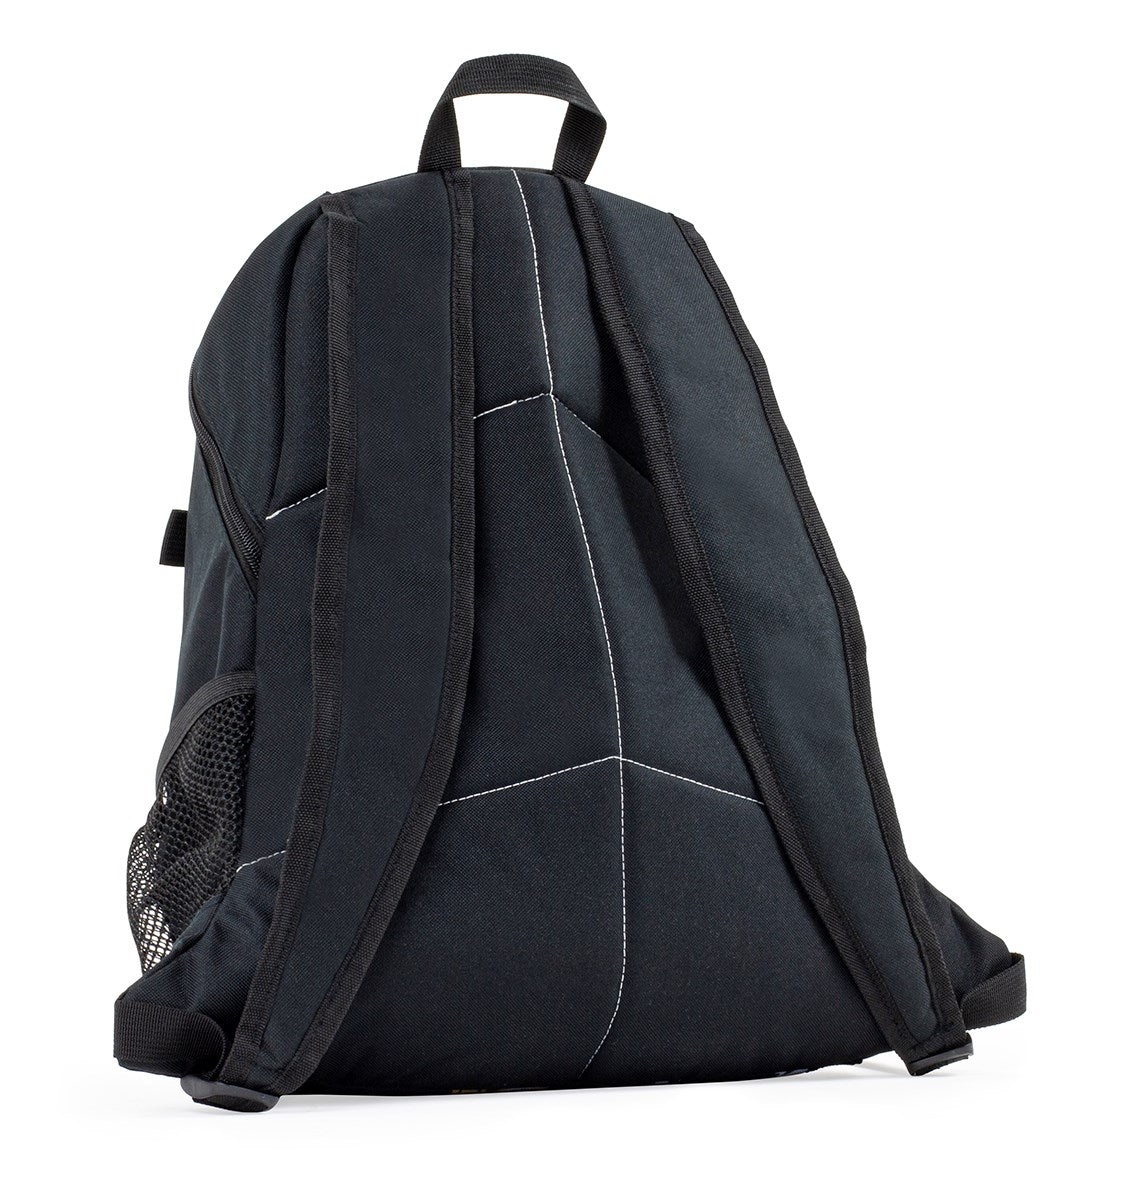 Enuff Backpack Black